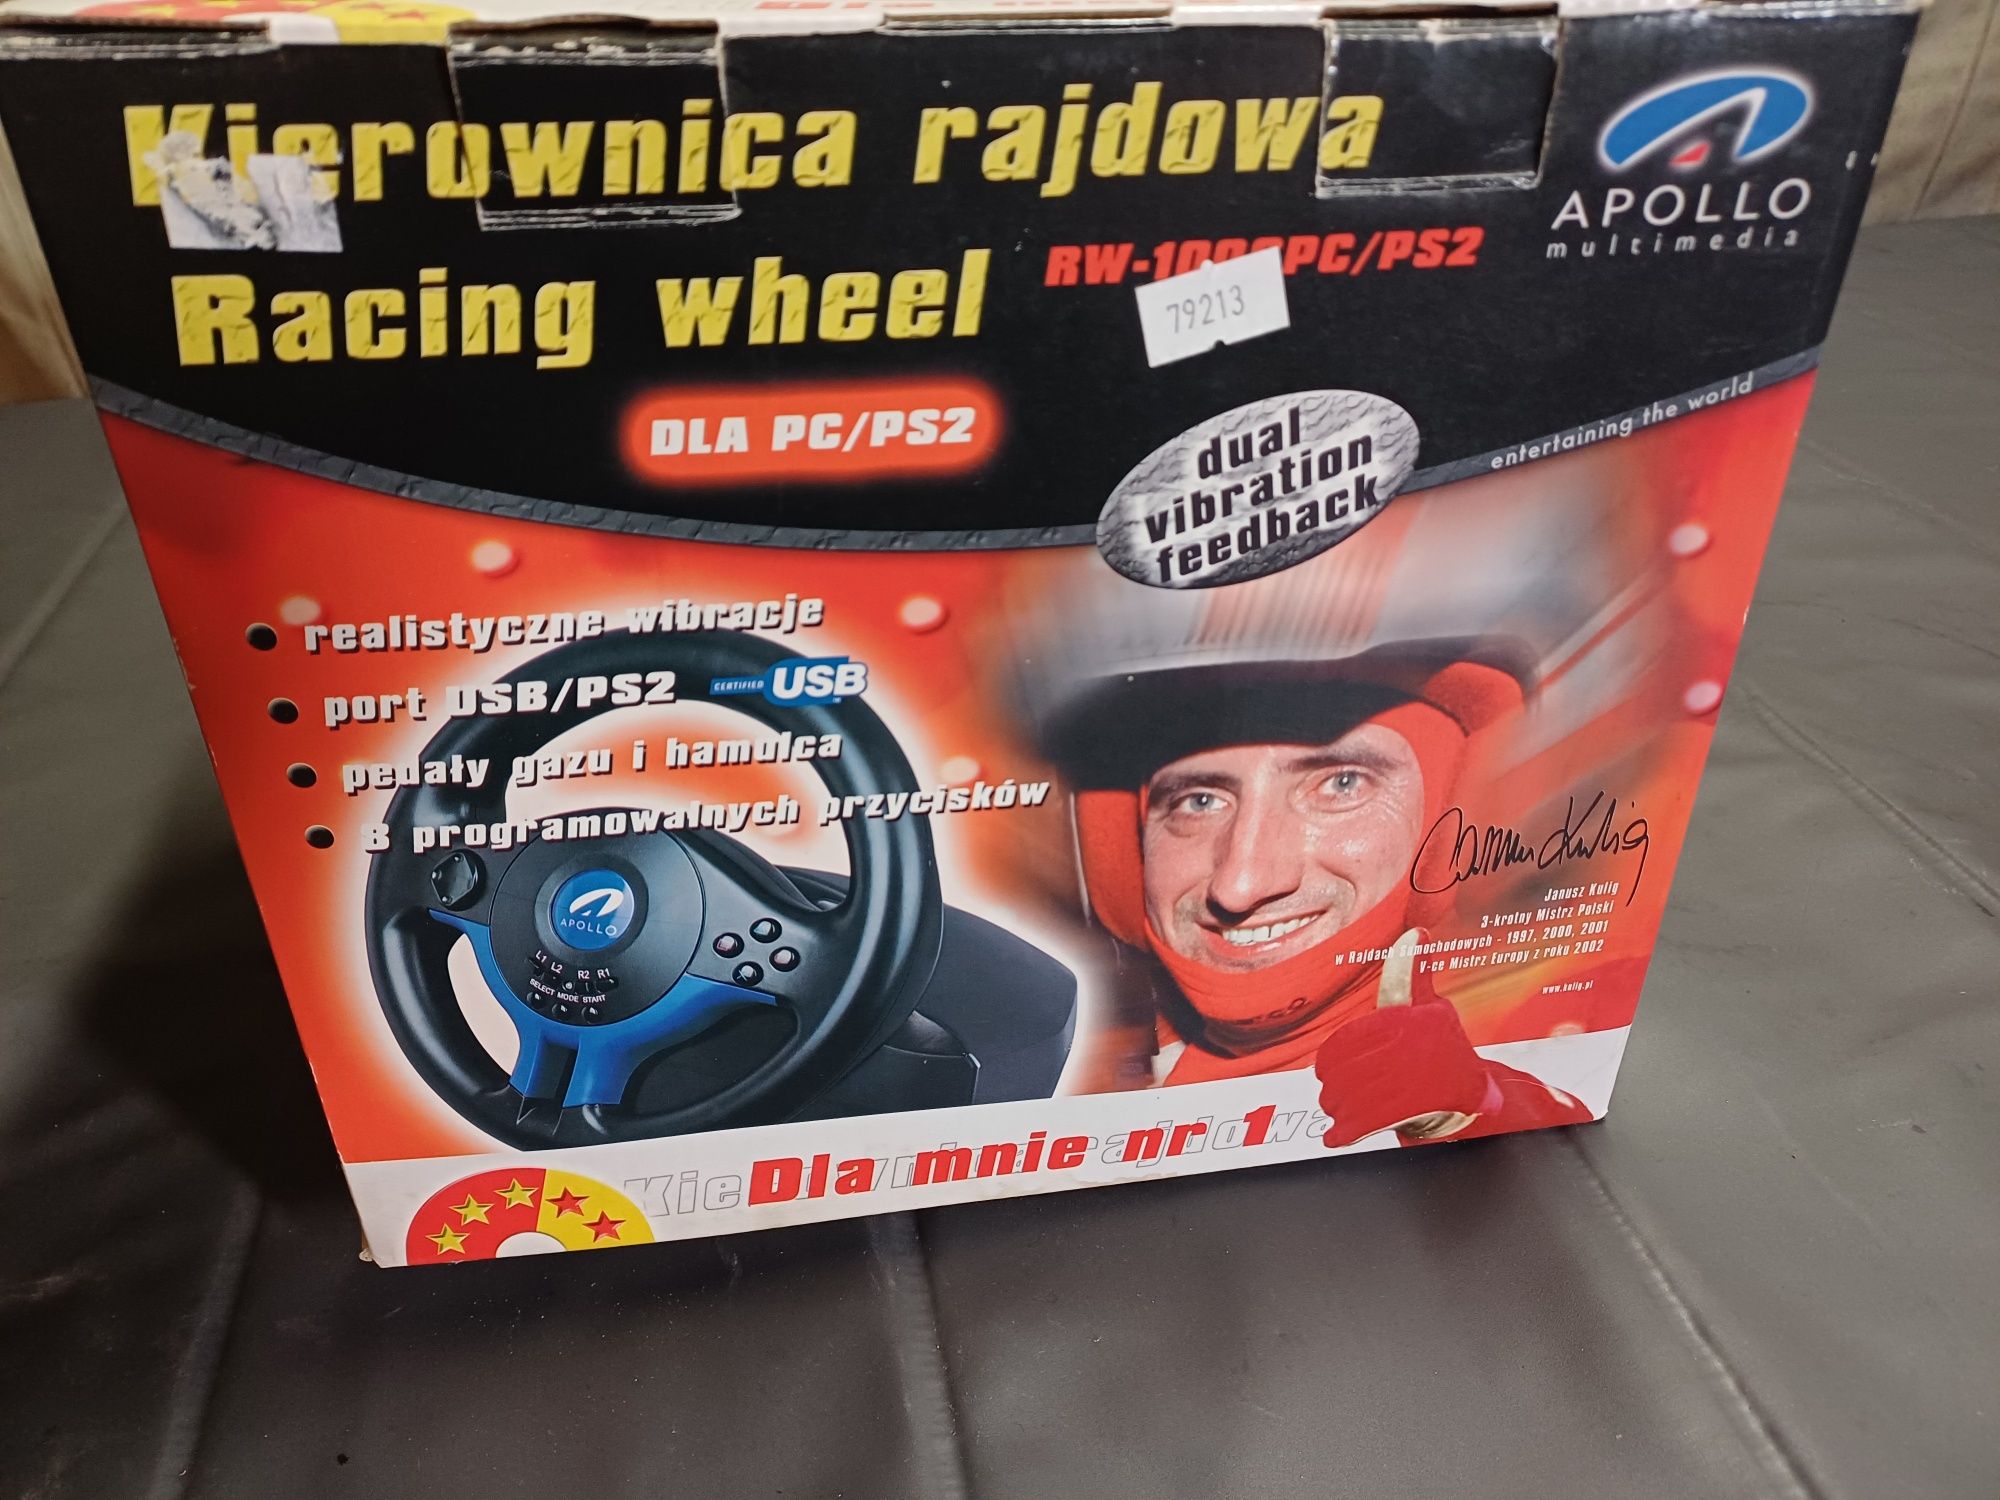 Sprzedam Kierownica Rajdowa Racing wheel APOLLO